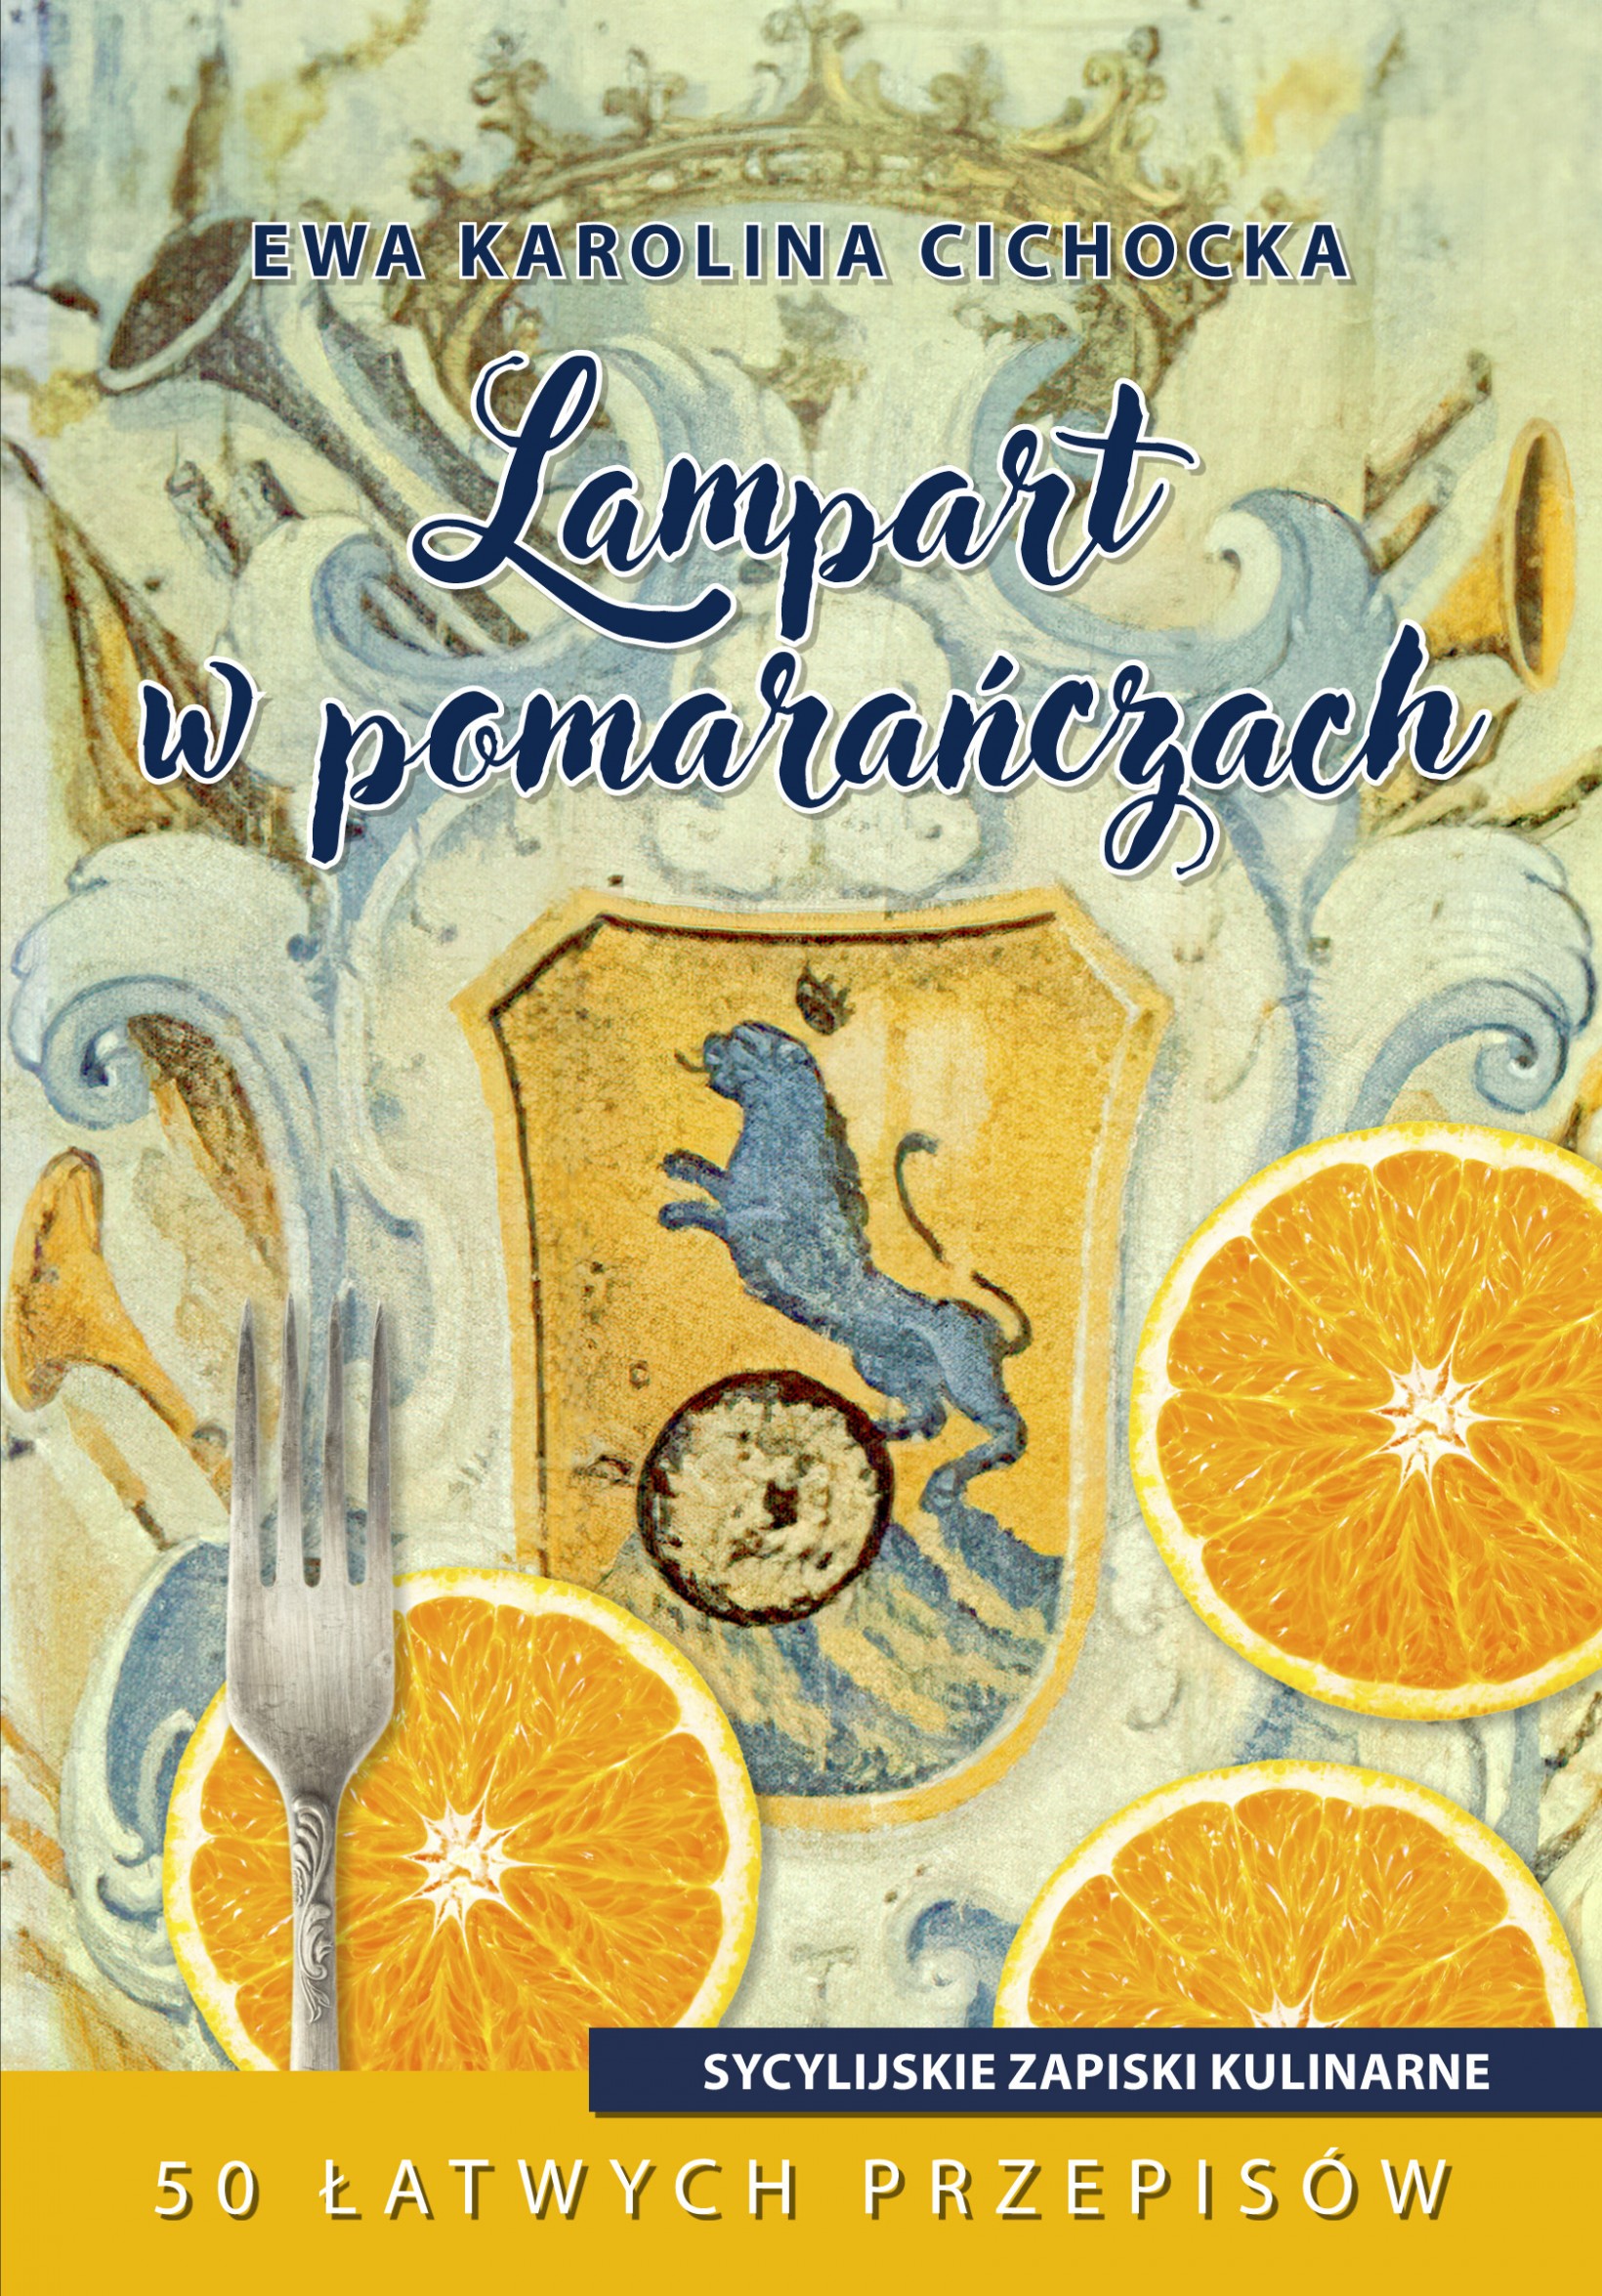 zdjęcie okładki książki pomarańcze